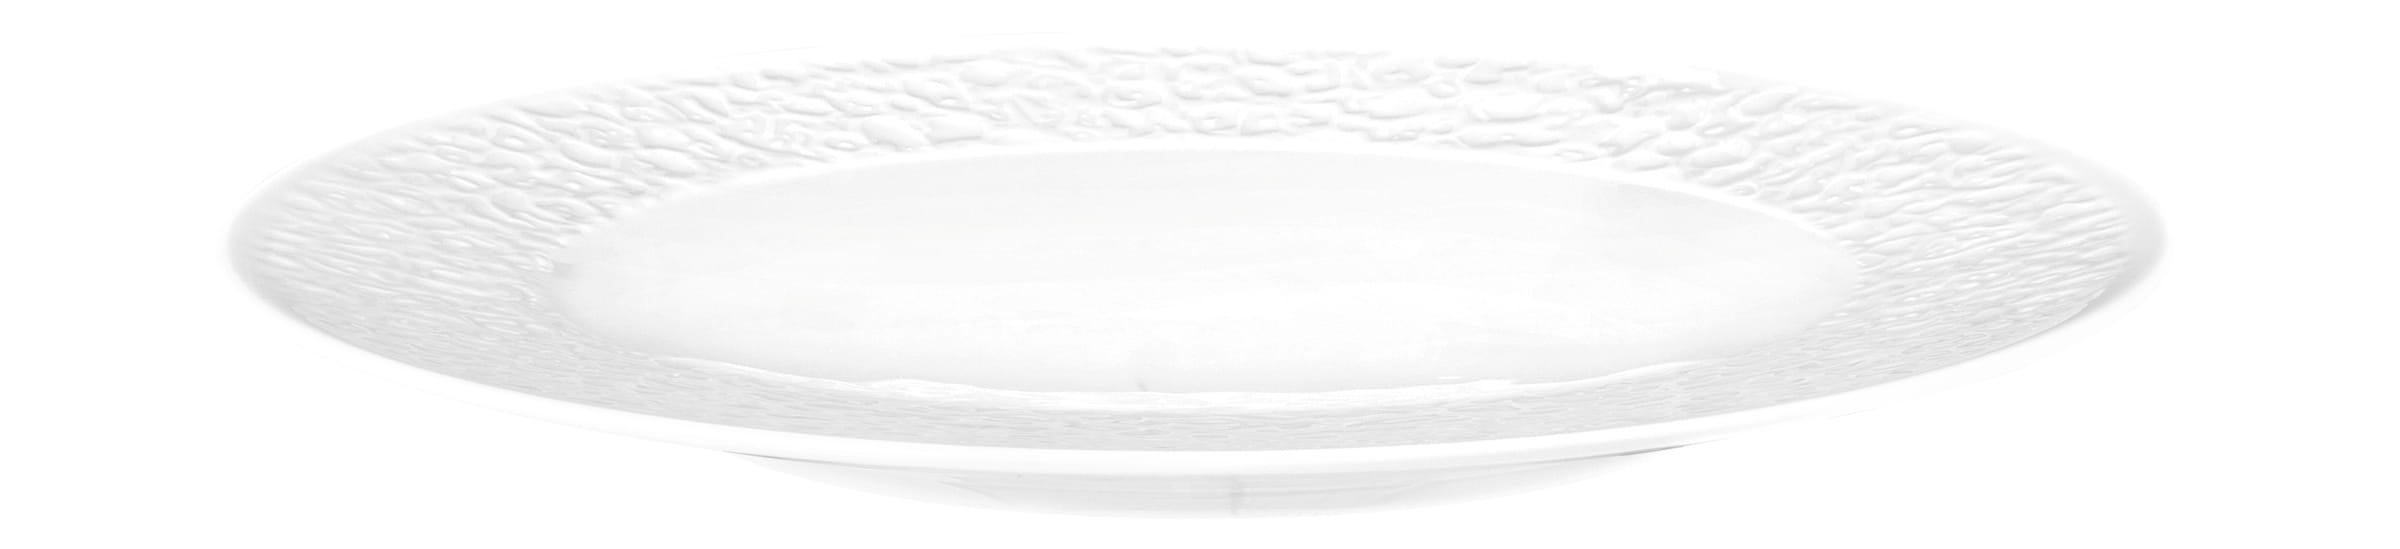 Seltmann Porzellan Nori Weiß Frühstücksteller Relief schmal rund 21 cm